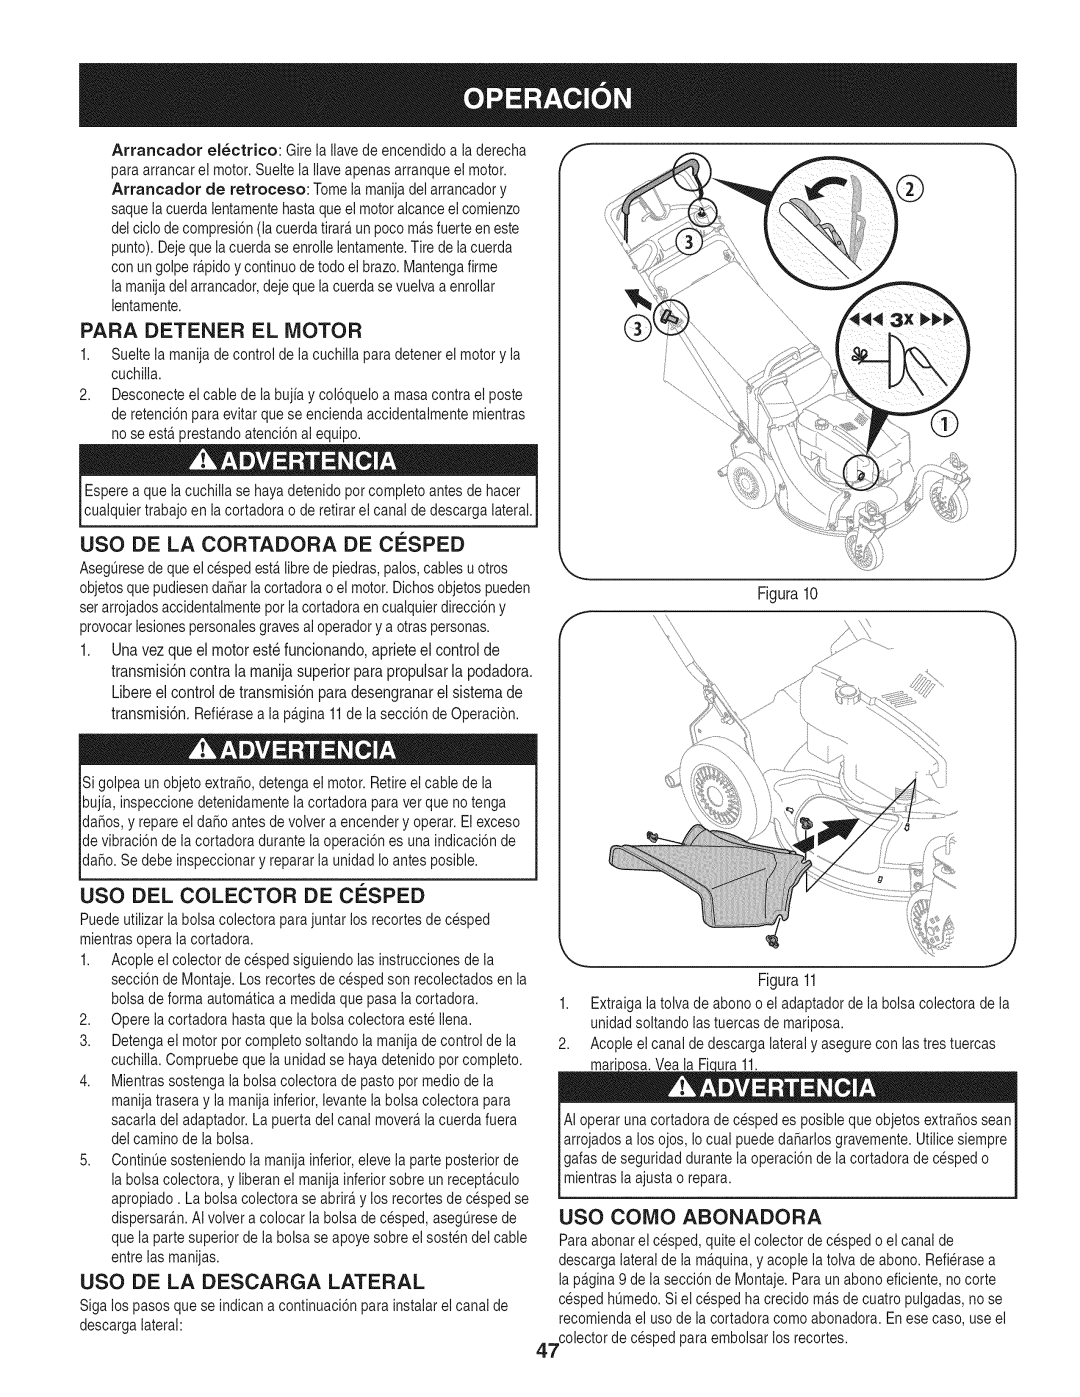 Craftsman 247.887210 manual Para Detener El Motor, Uso De La Cortadora De Cesped, Uso Del Colector De Cesped 